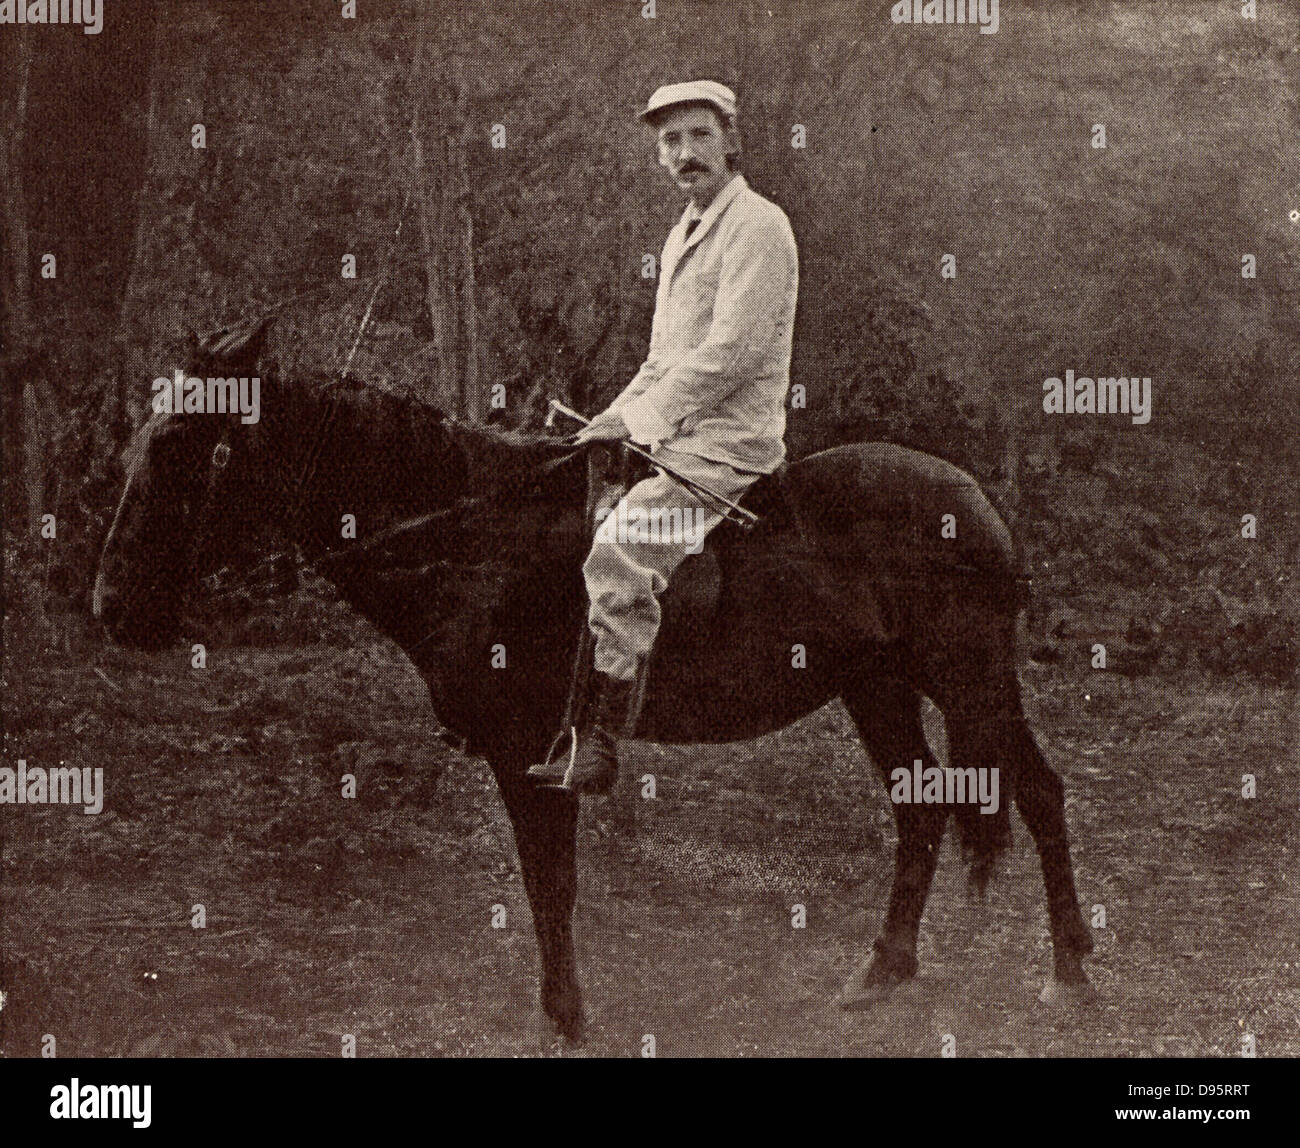 Robert Louis Balfour Stevenson (1850-1894), l'auteur Écossais né à Édimbourg. Stevenson à Samoa sur son cheval 'Jack'. À partir de 'Vailima Lettres' (Londres, 1895), correspondance de Stevenson à Sidney Colvin 1890-1894. Photographie. Banque D'Images